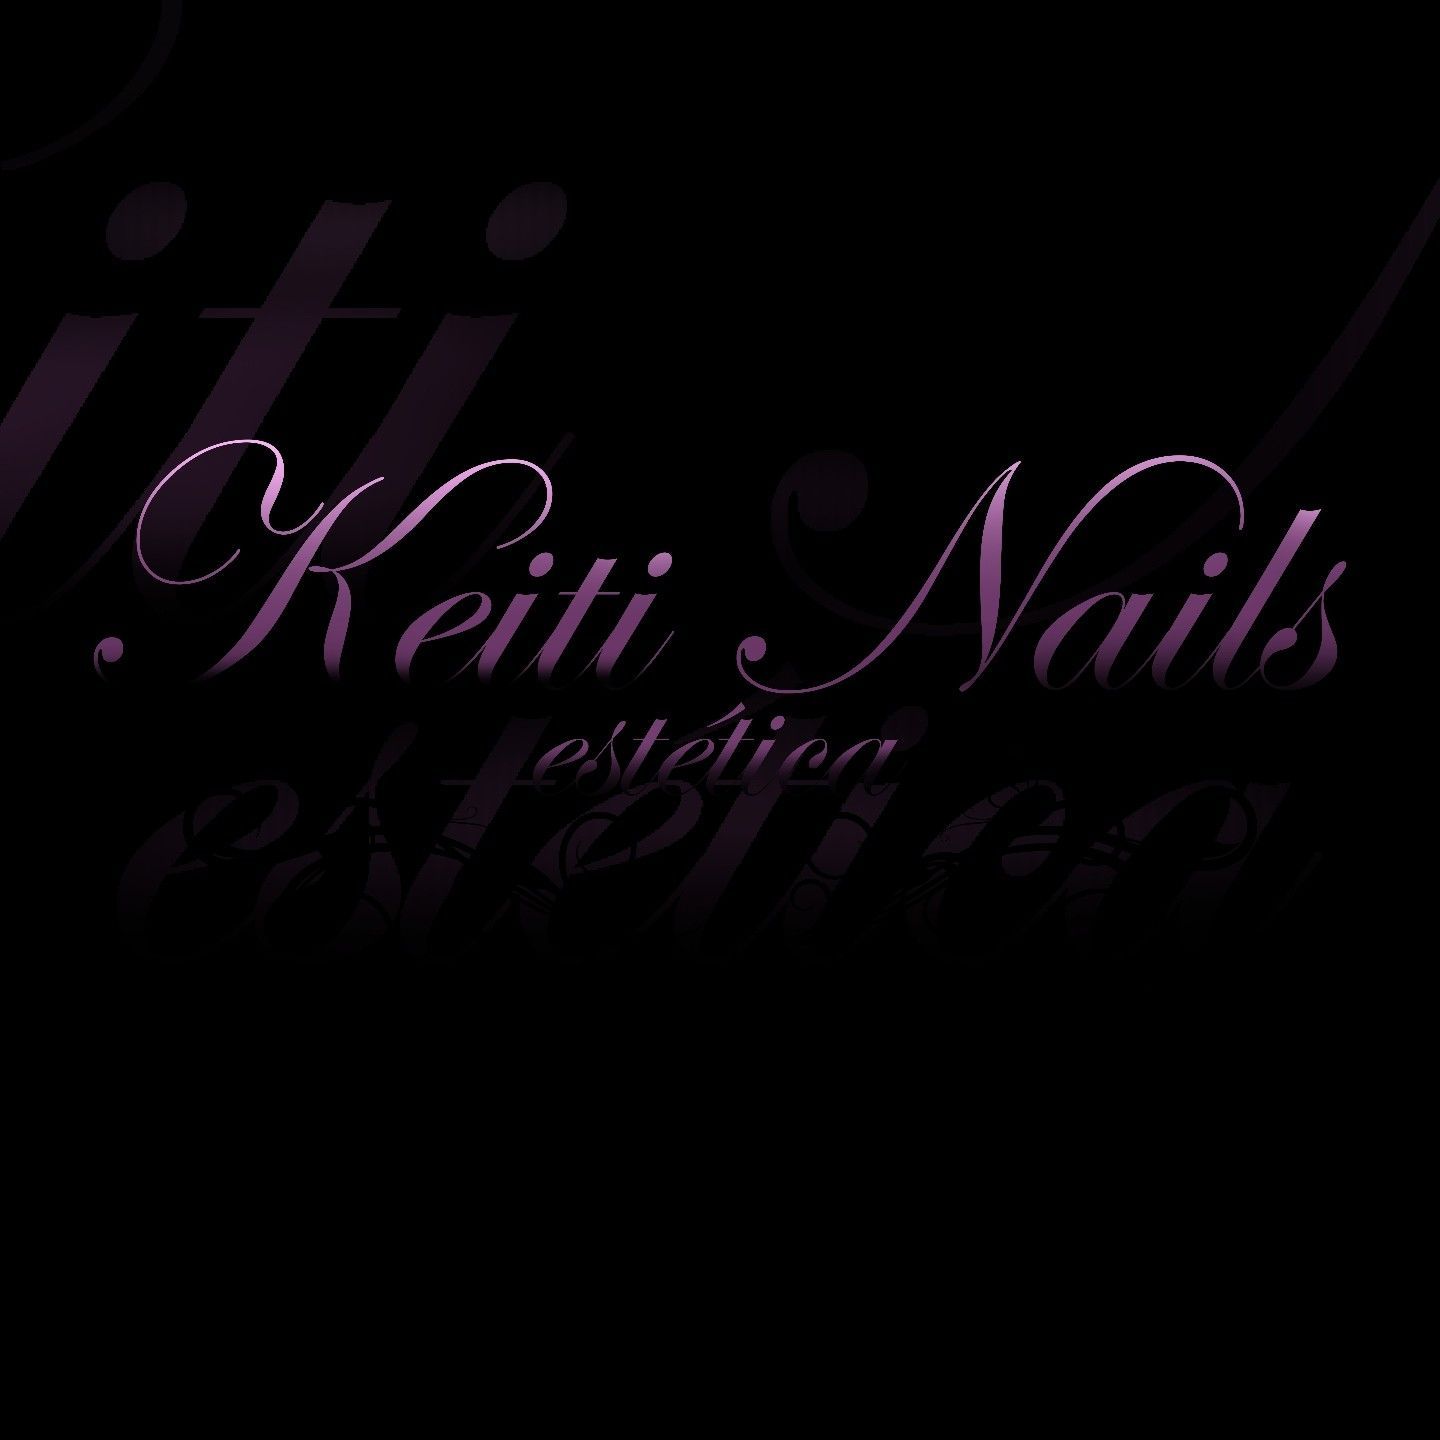 Keiti Nails Y Estetica, Calle San Pedro, 12, 30740, San Pedro del Pinatar